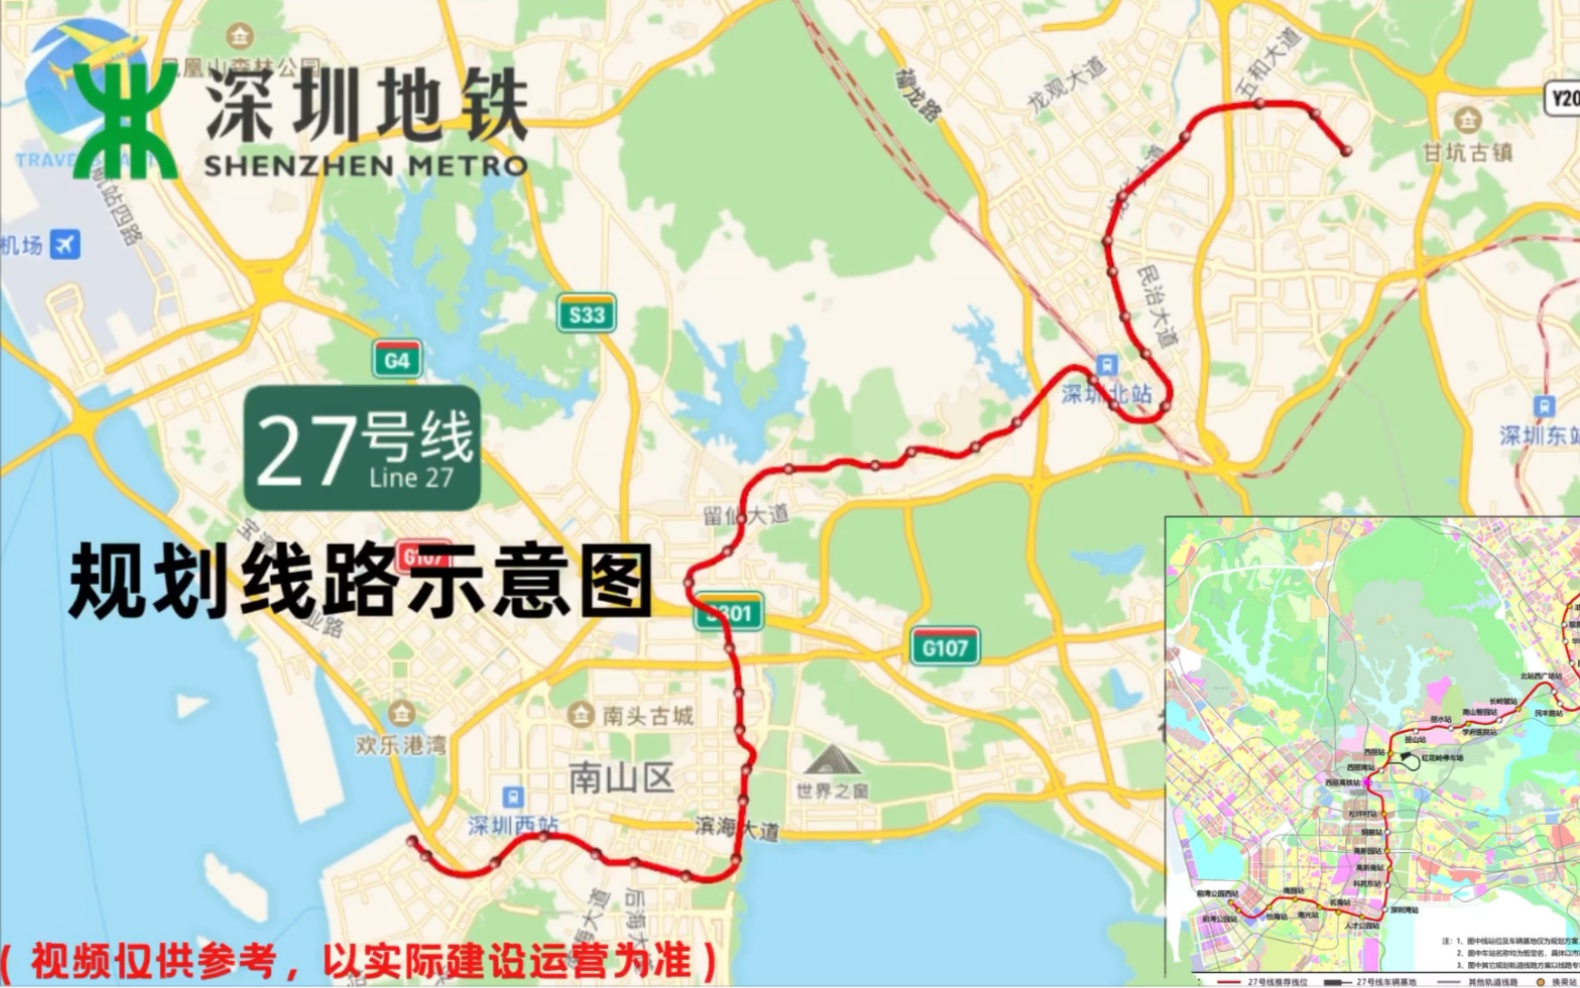 【深圳地铁】轨道27号线规划线路示意图(前湾公园西